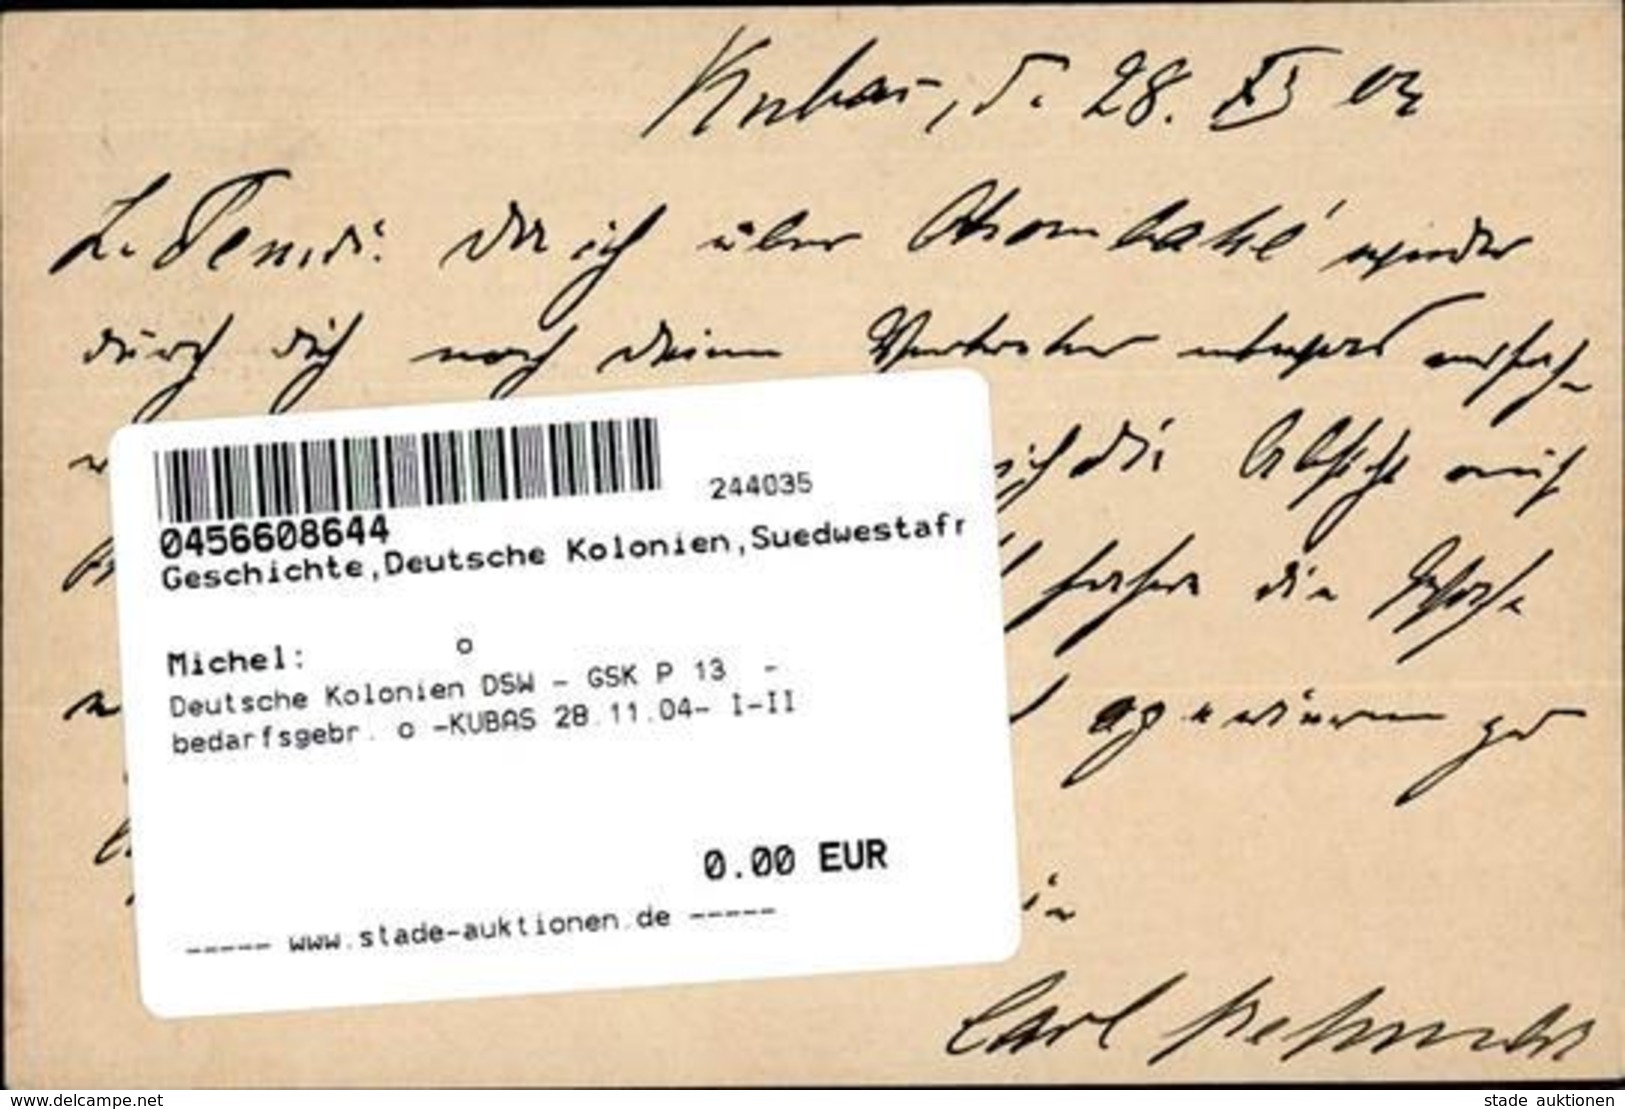 Deutsche Kolonien DSW - GSK P 13  - Bedarfsgebr. O -KUBAS 28.11.04- I-II Colonies - Geschichte